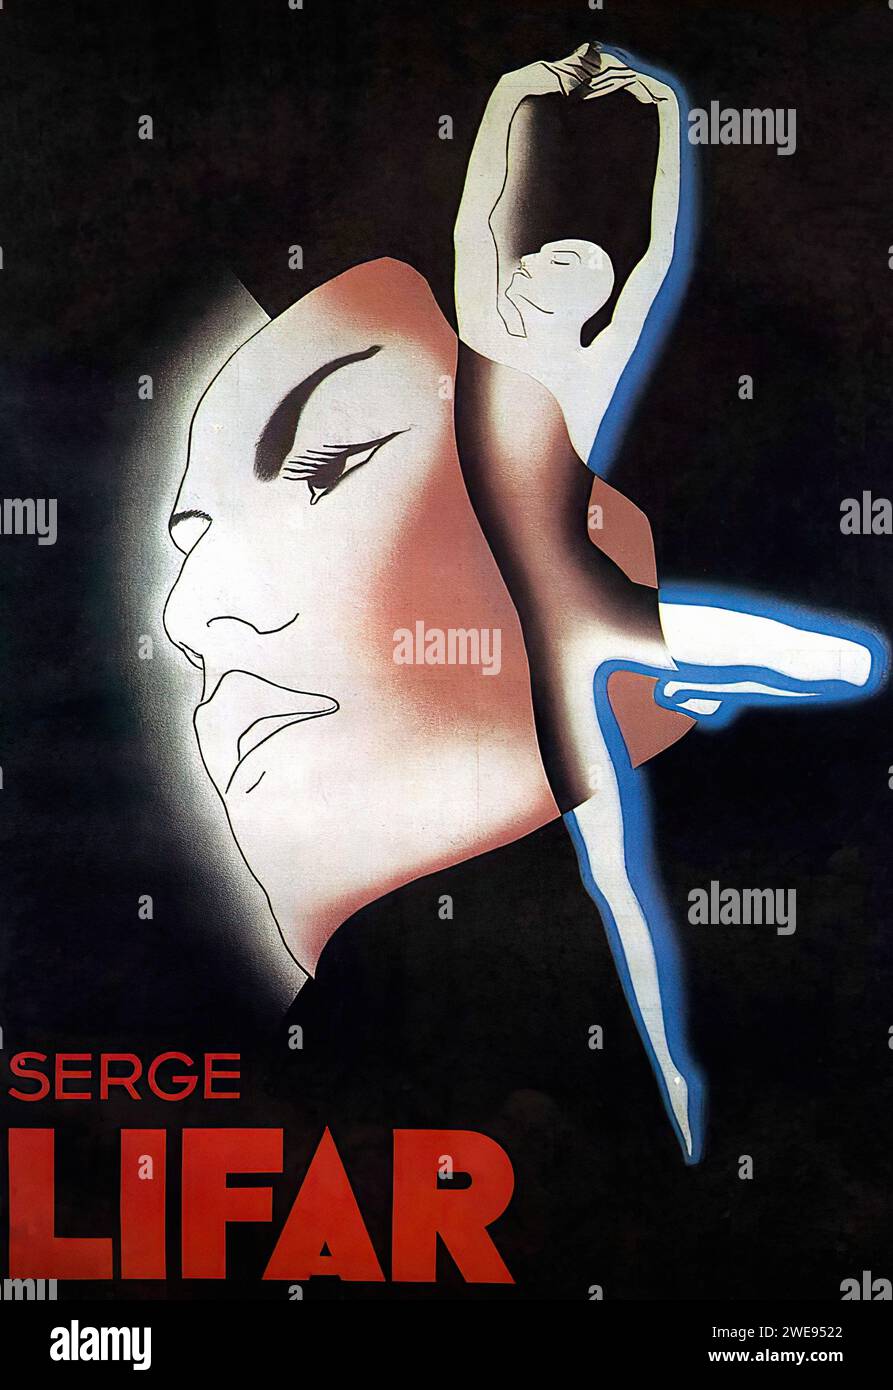 'SERGE LIFAR' Publicité française vintage. Une affiche graphique représentant la silhouette d'un danseur fusionnée avec un profil de visage stylisé sur un fond sombre. Le design utilise des contrastes nets et des couleurs minimes, typiques du style Art Déco, faisant la promotion de Serge Lifar. Banque D'Images